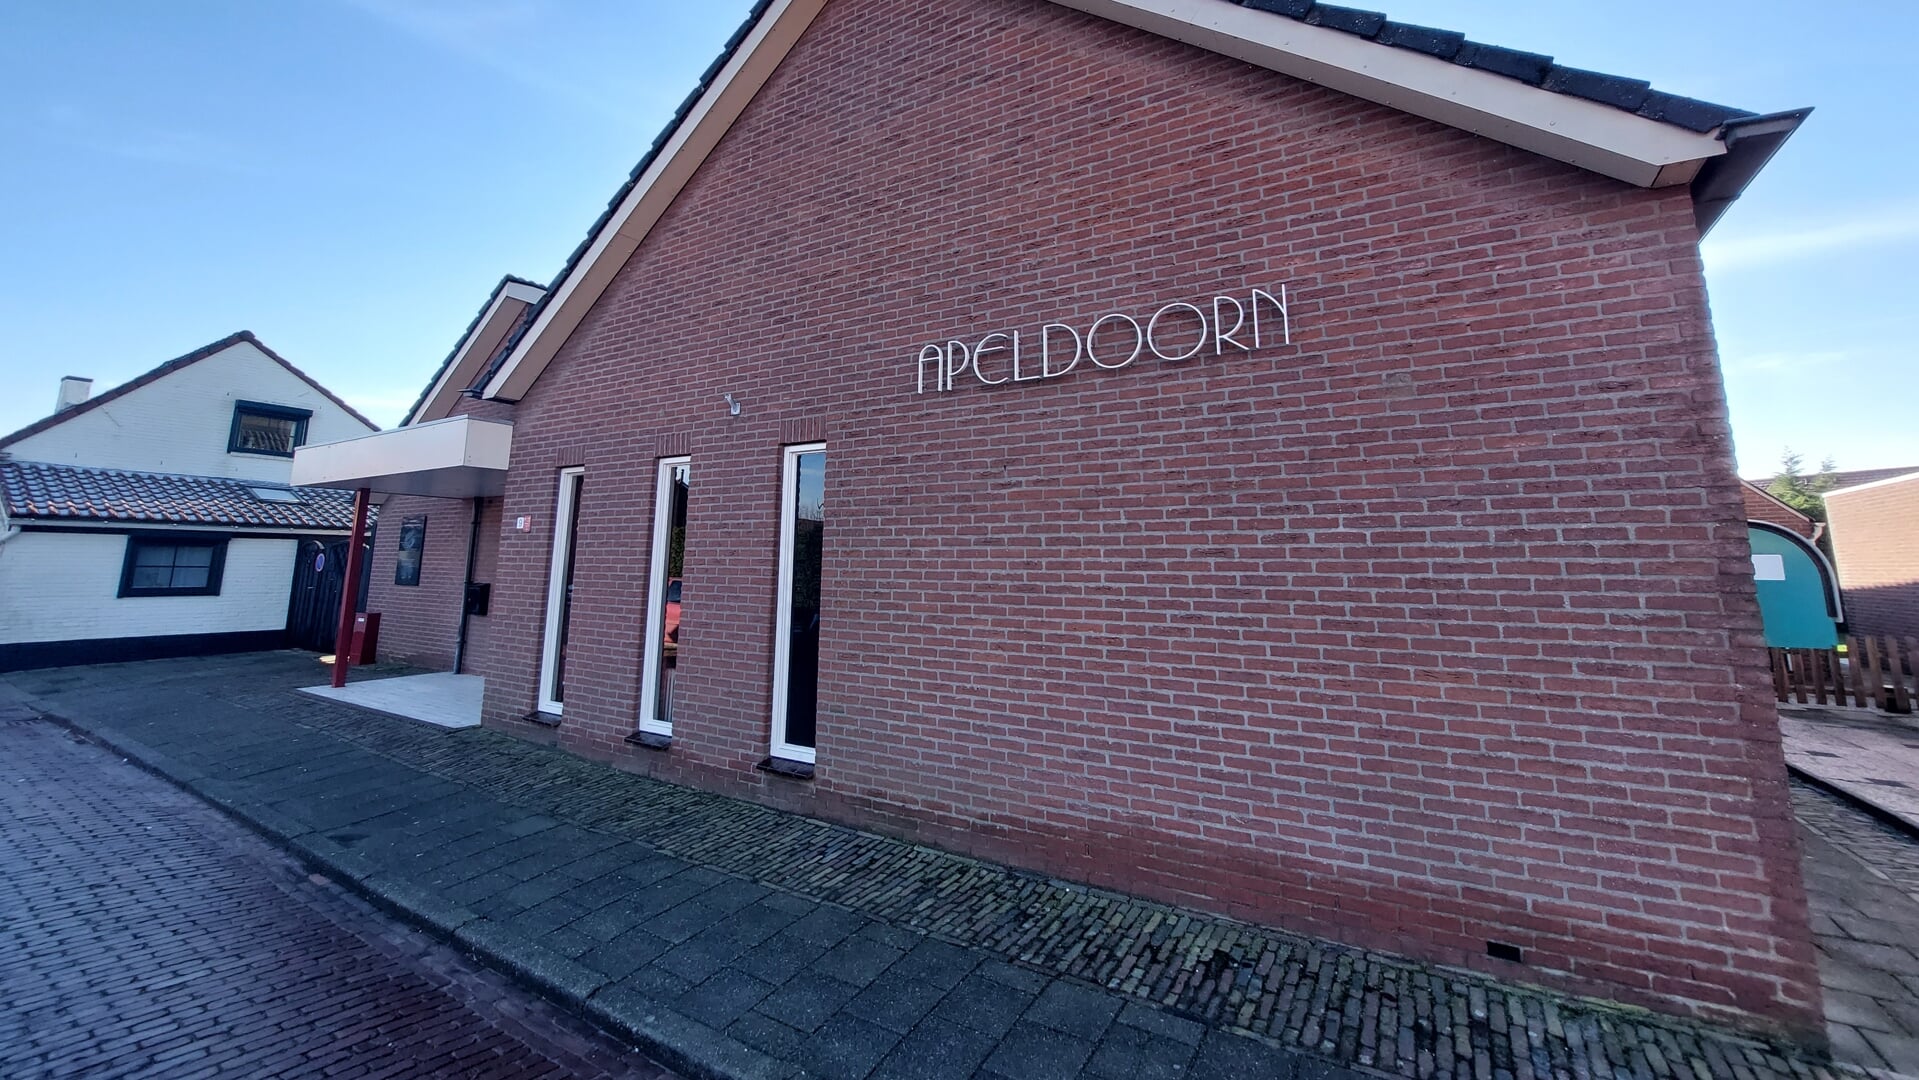 Dorpshuis Apeldoorn in Oostdijk.